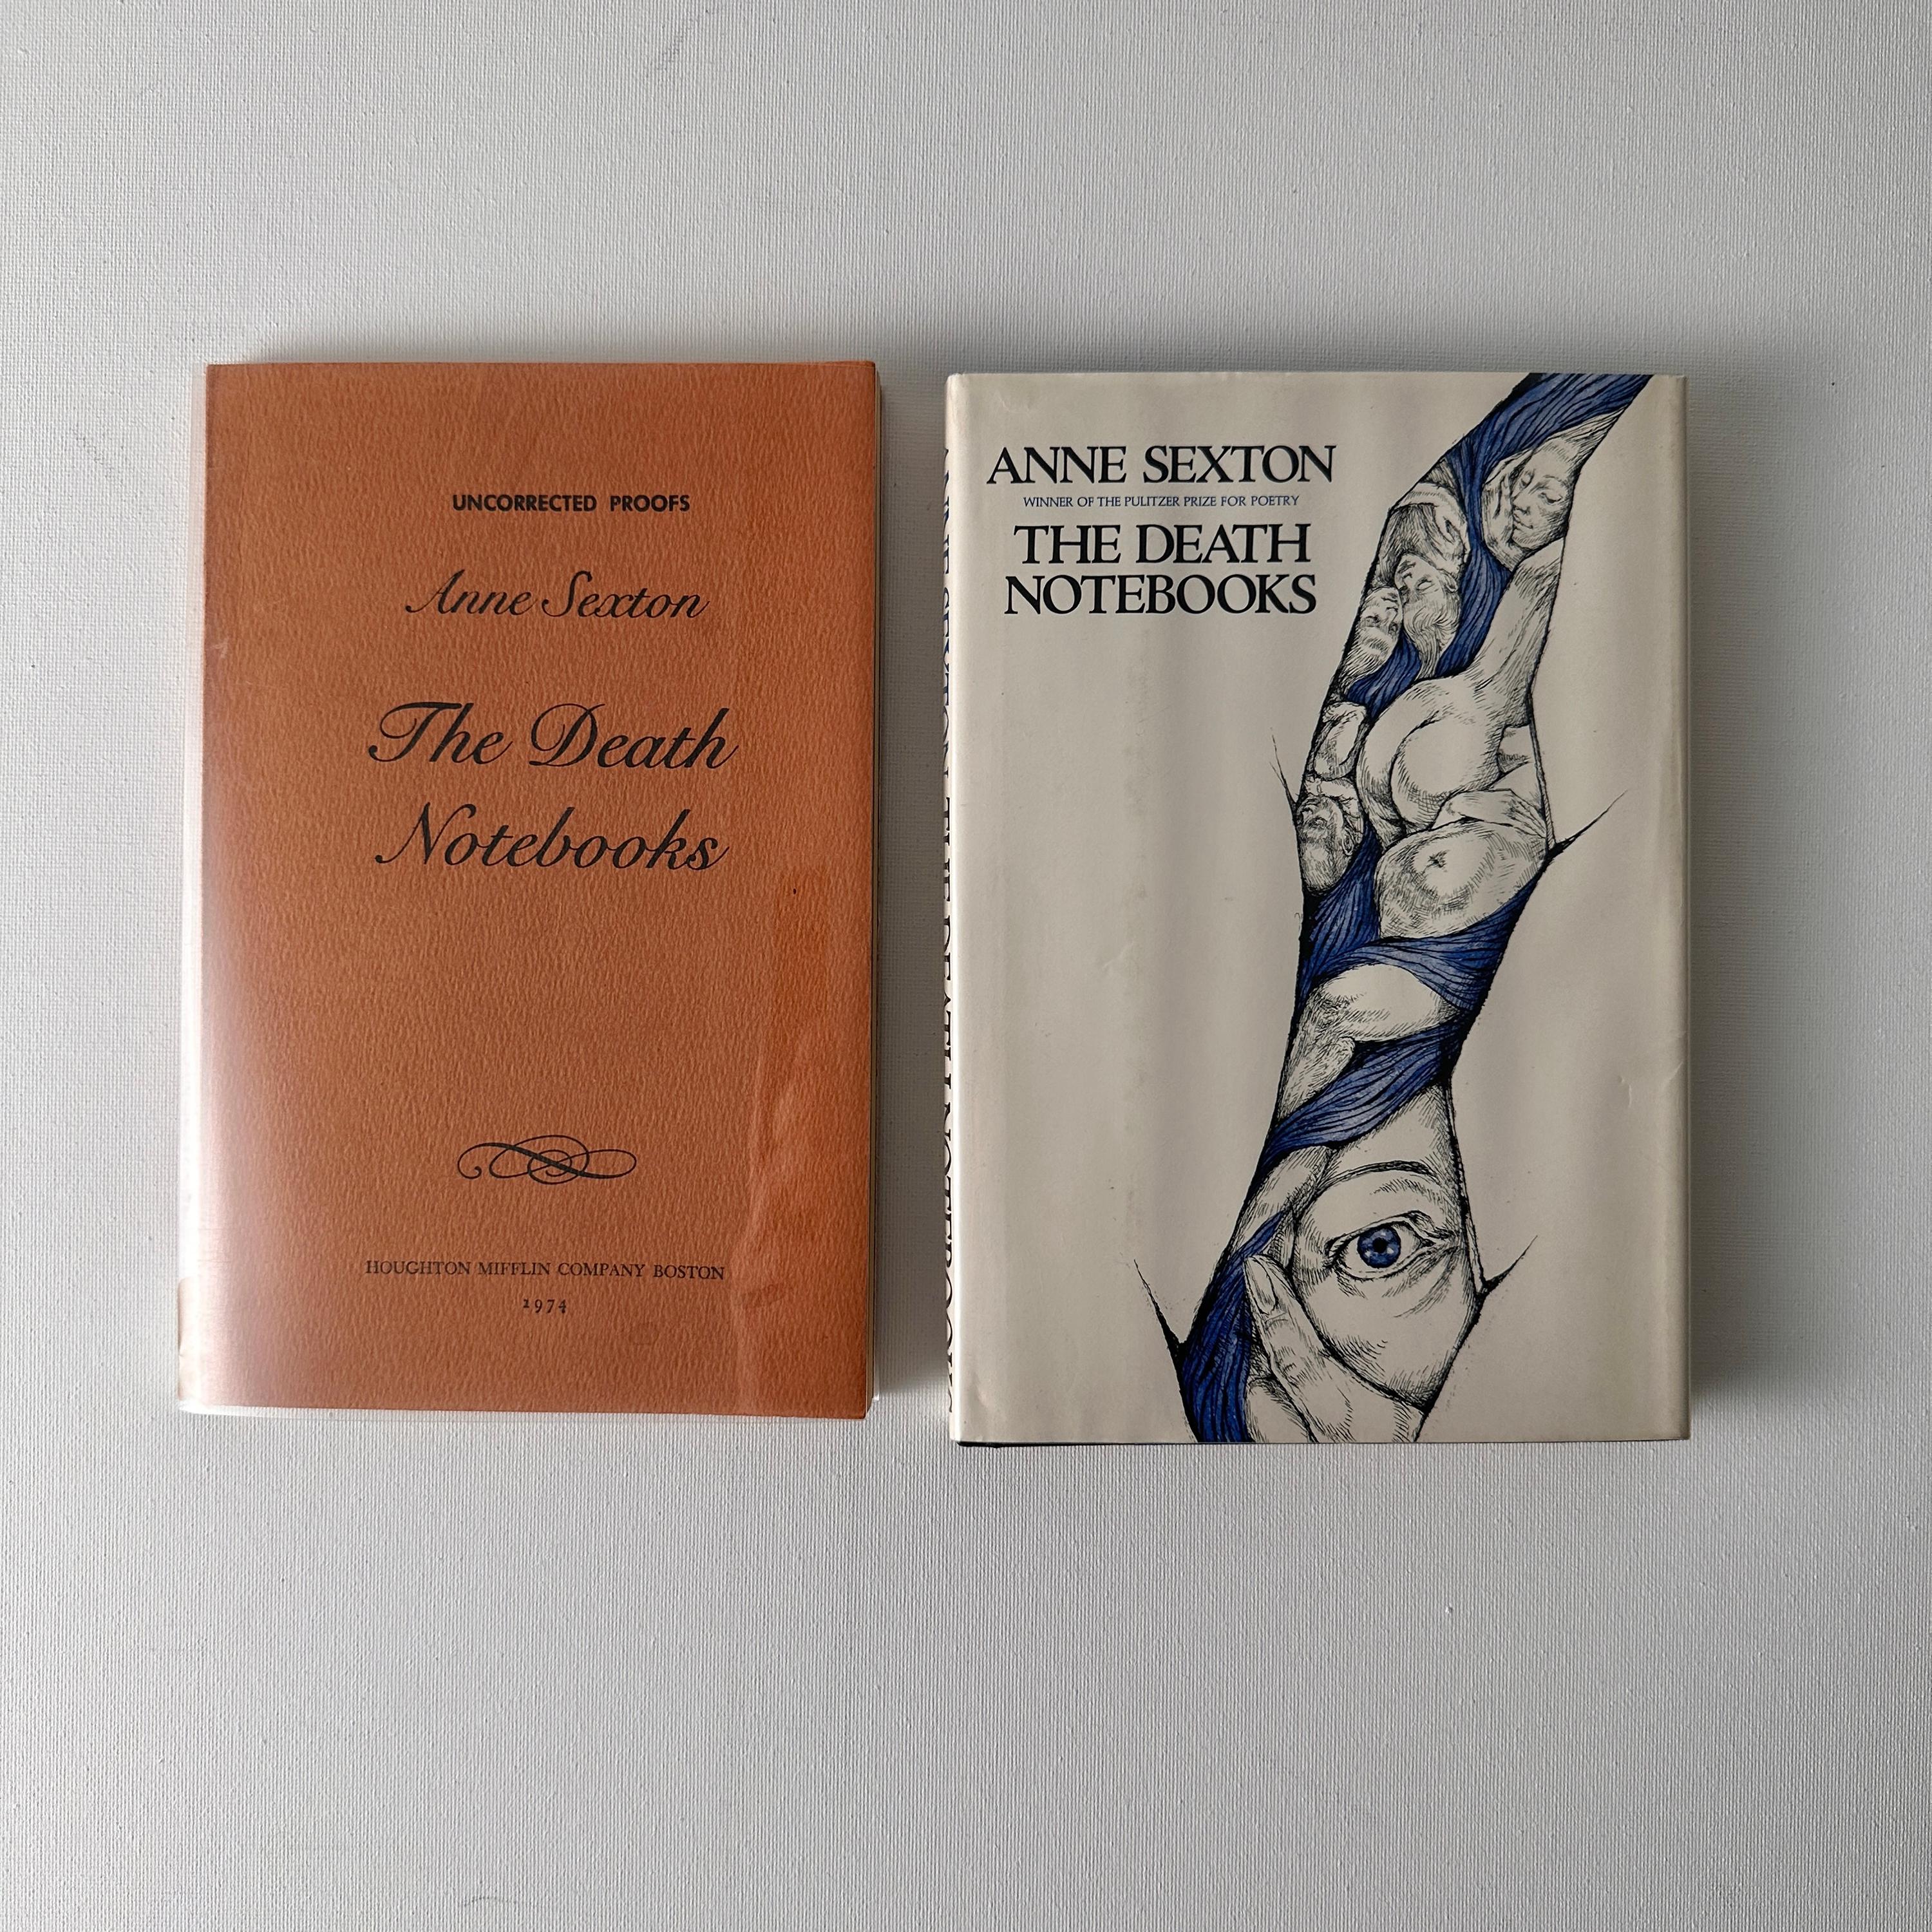 L'épreuve (imprimée avant la couverture rigide, envoyée aux réviseurs) et la première impression finale, première édition du dernier recueil de poésie de la poétesse américaine Anne Sexton, imprimé de son vivant. 

Inscrite 